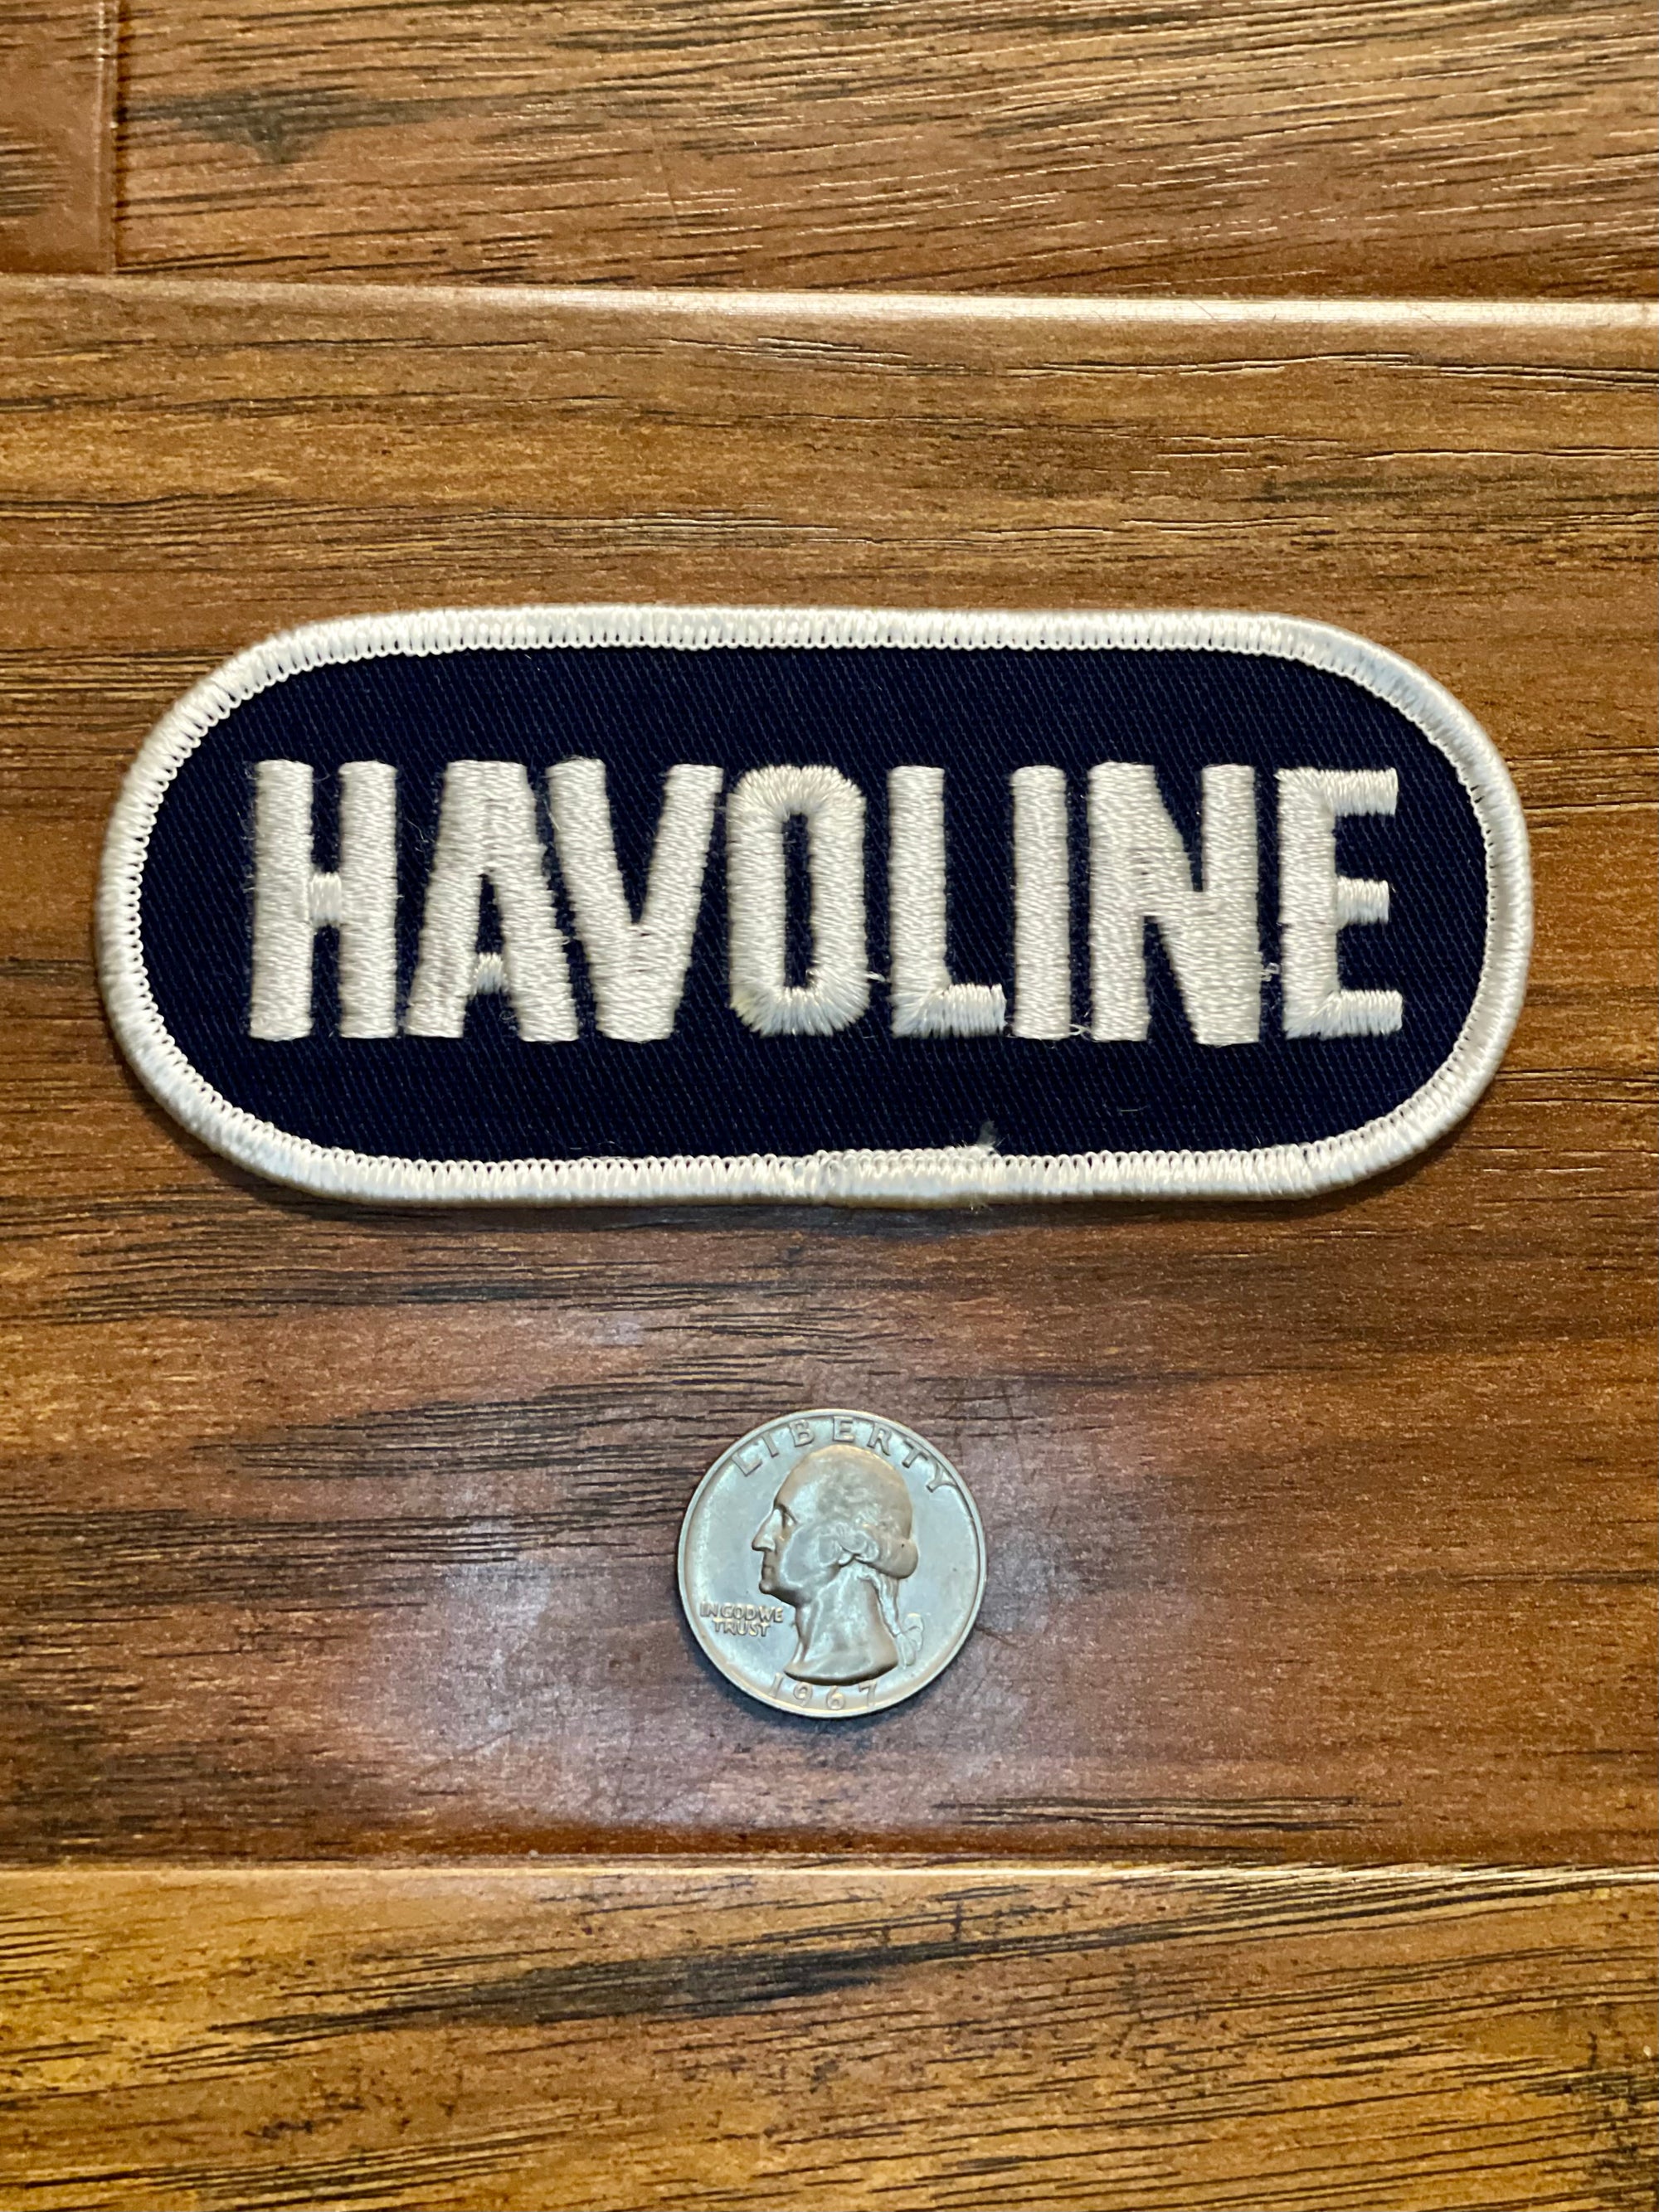 Vintage Havoline